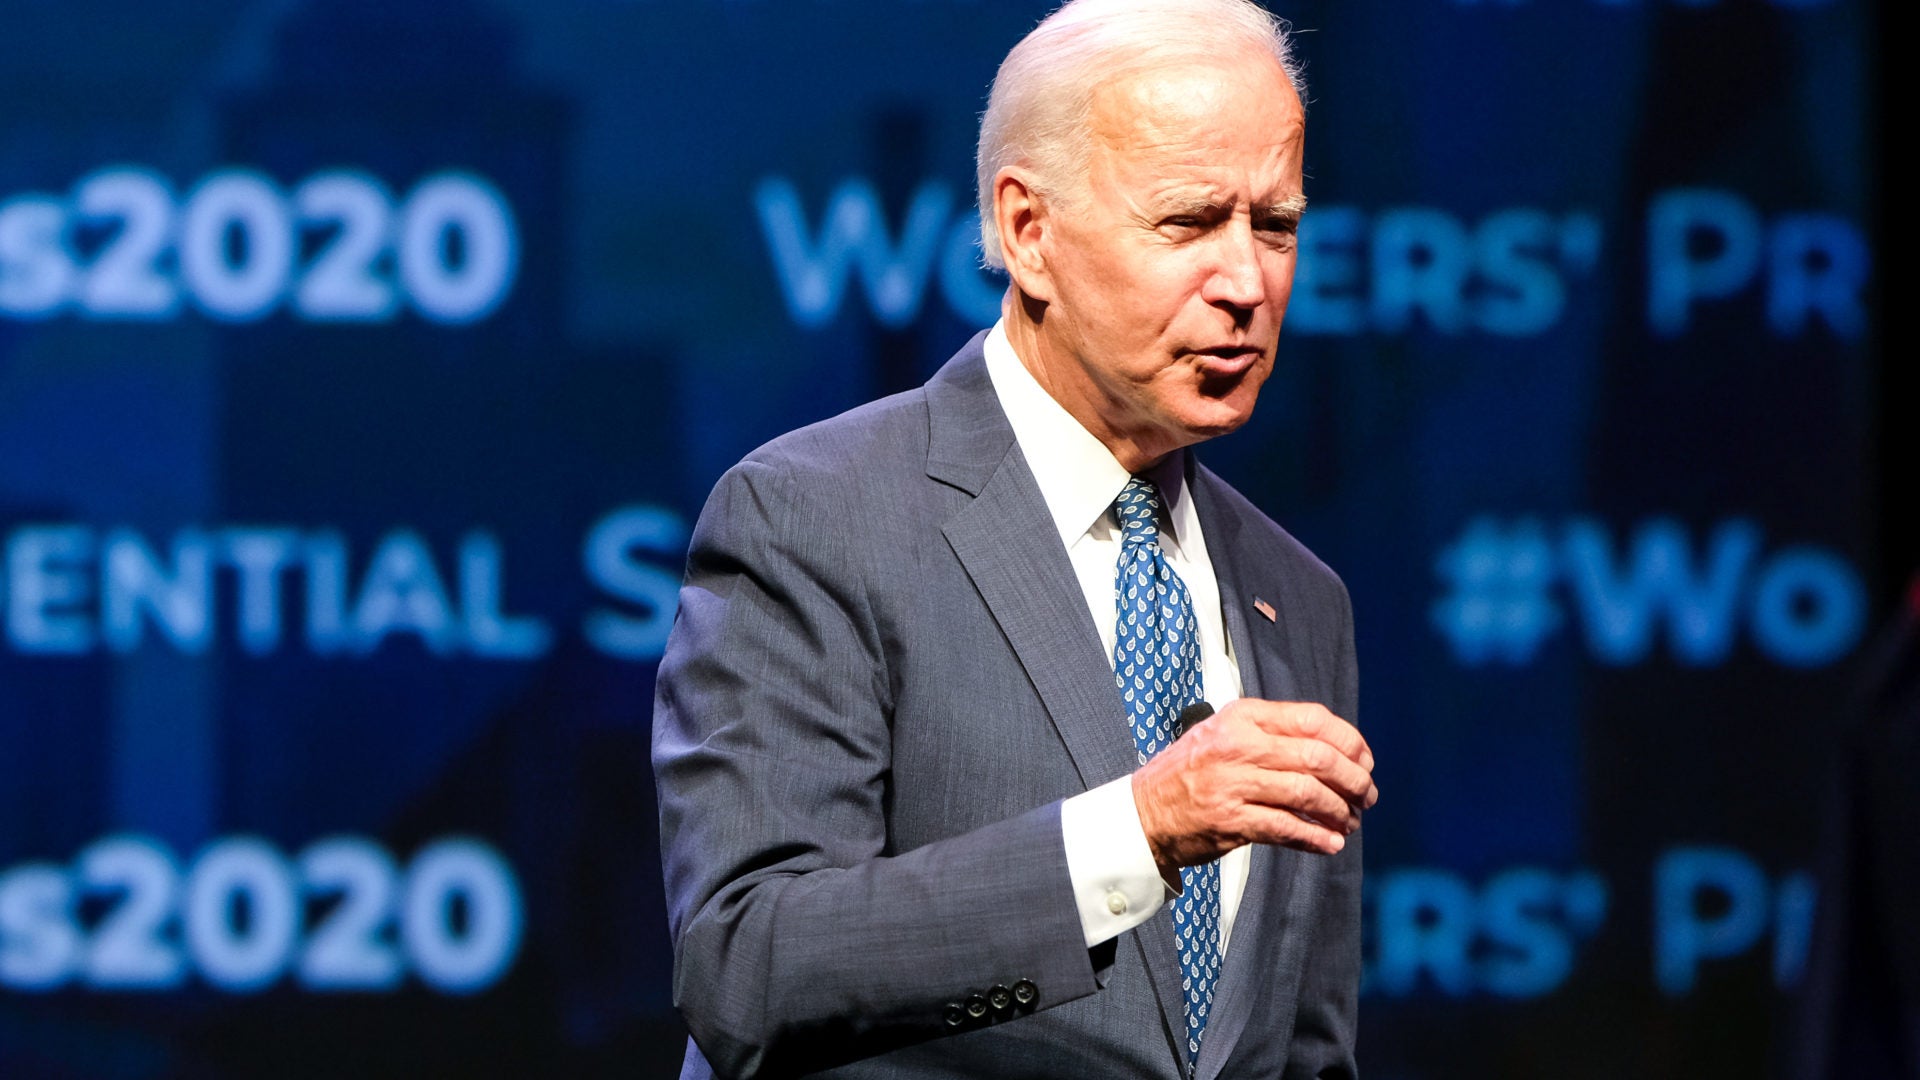 Joe Biden mocked in Trumps parody touchy-feely video on 